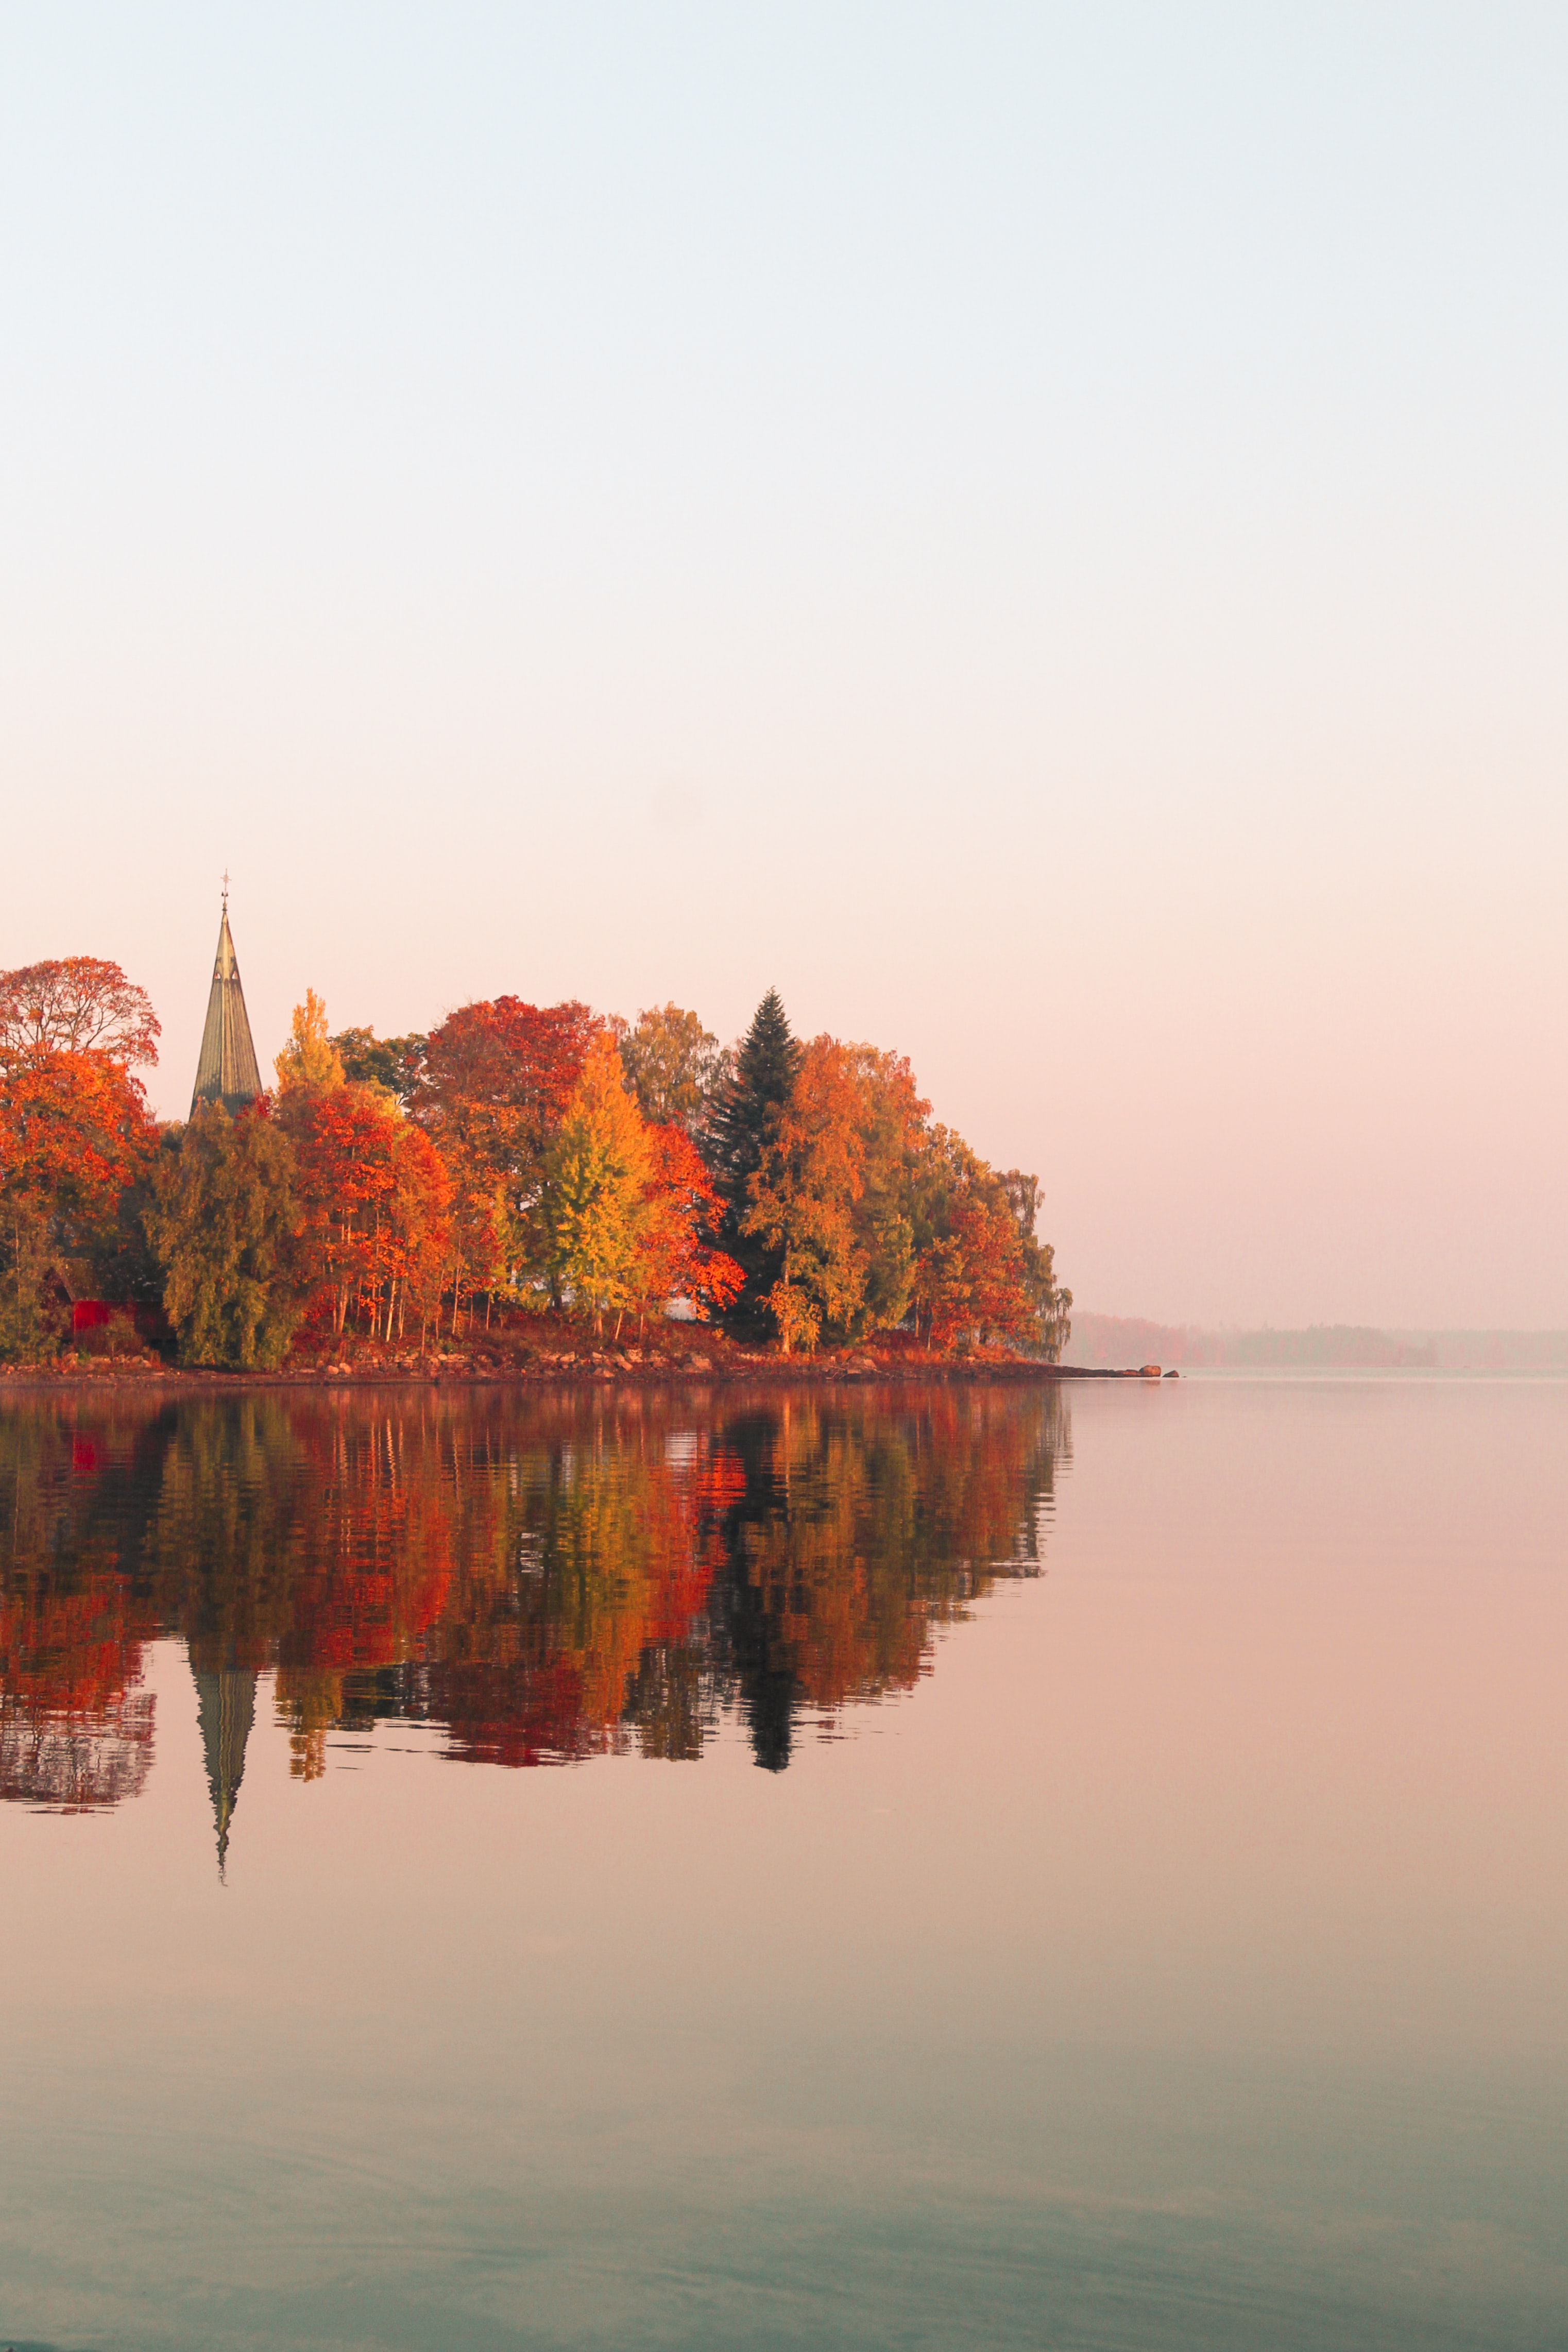 Herbst in Skandinavien mit bunten Blätter auf den Bäumen am Wasser